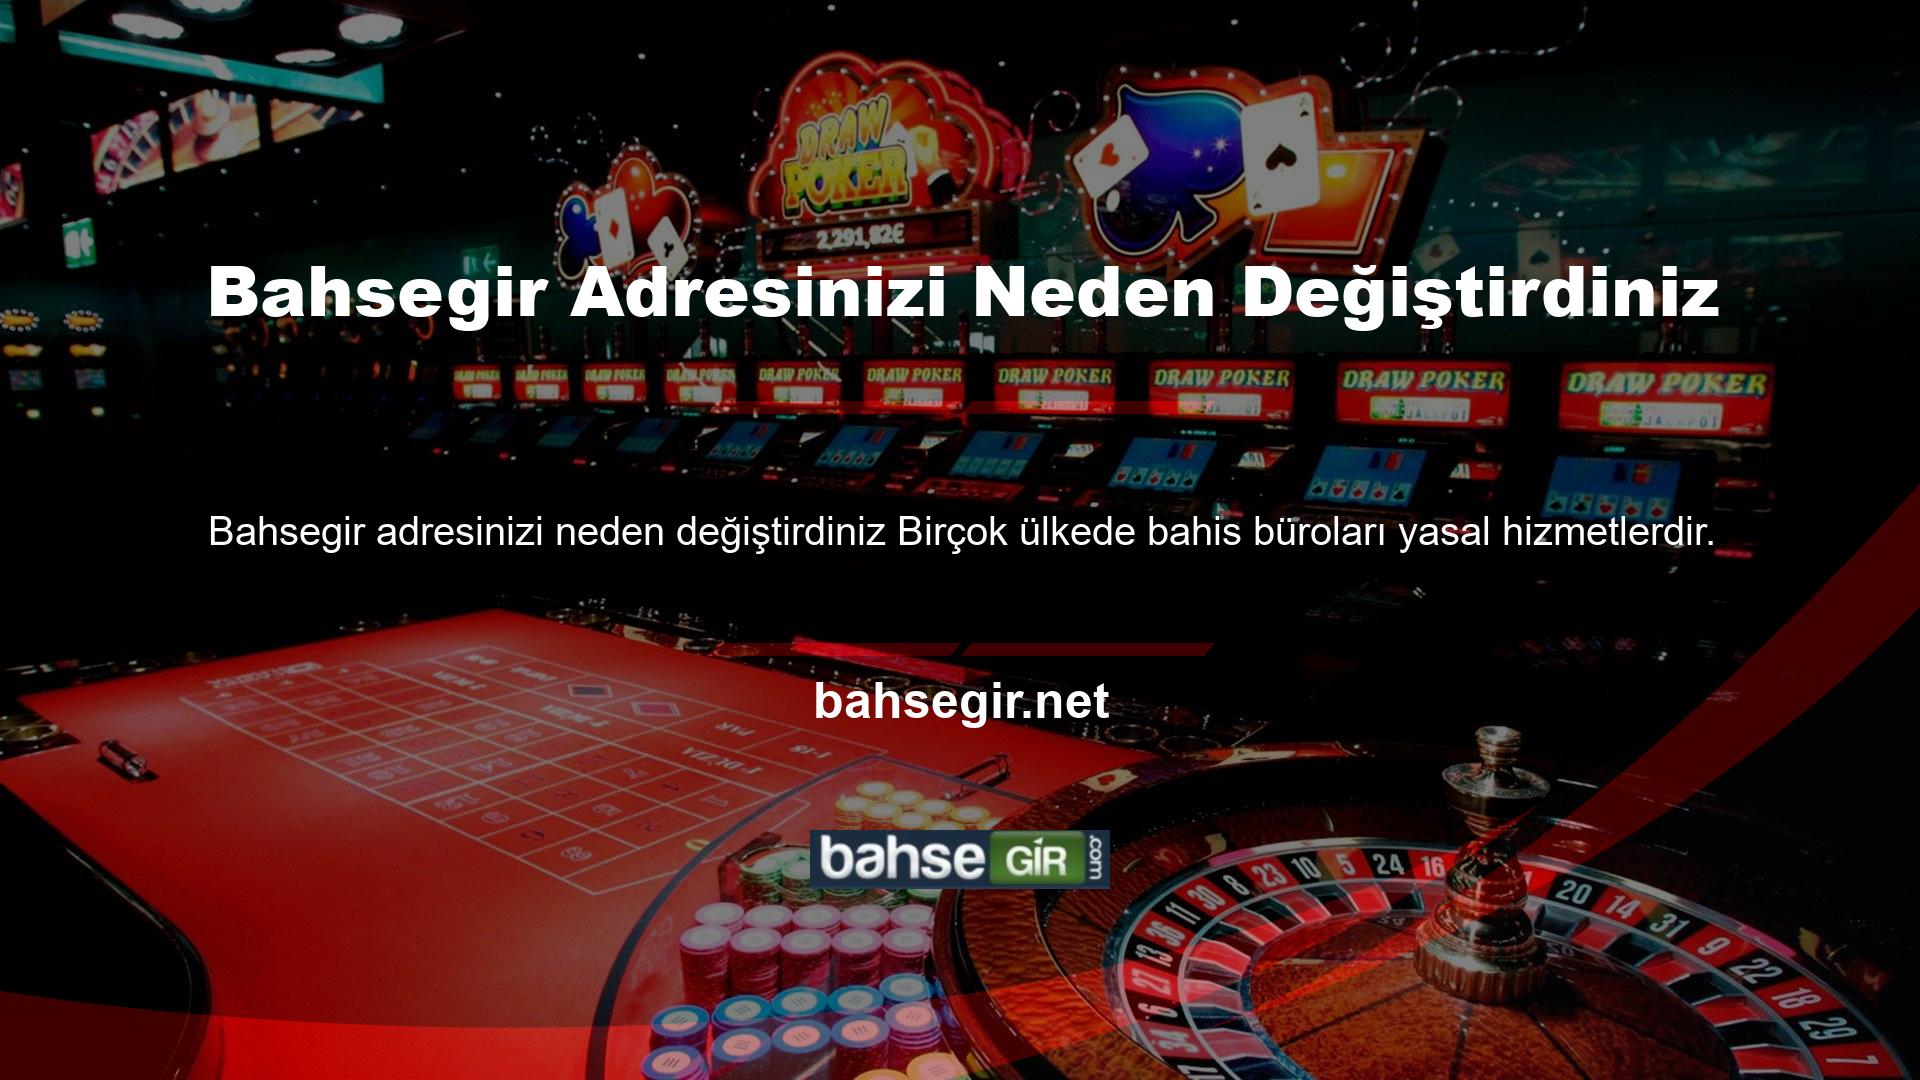 Ancak, lisanslı veya lisanslı tüm casino siteleri Türkiye'de yasaktır